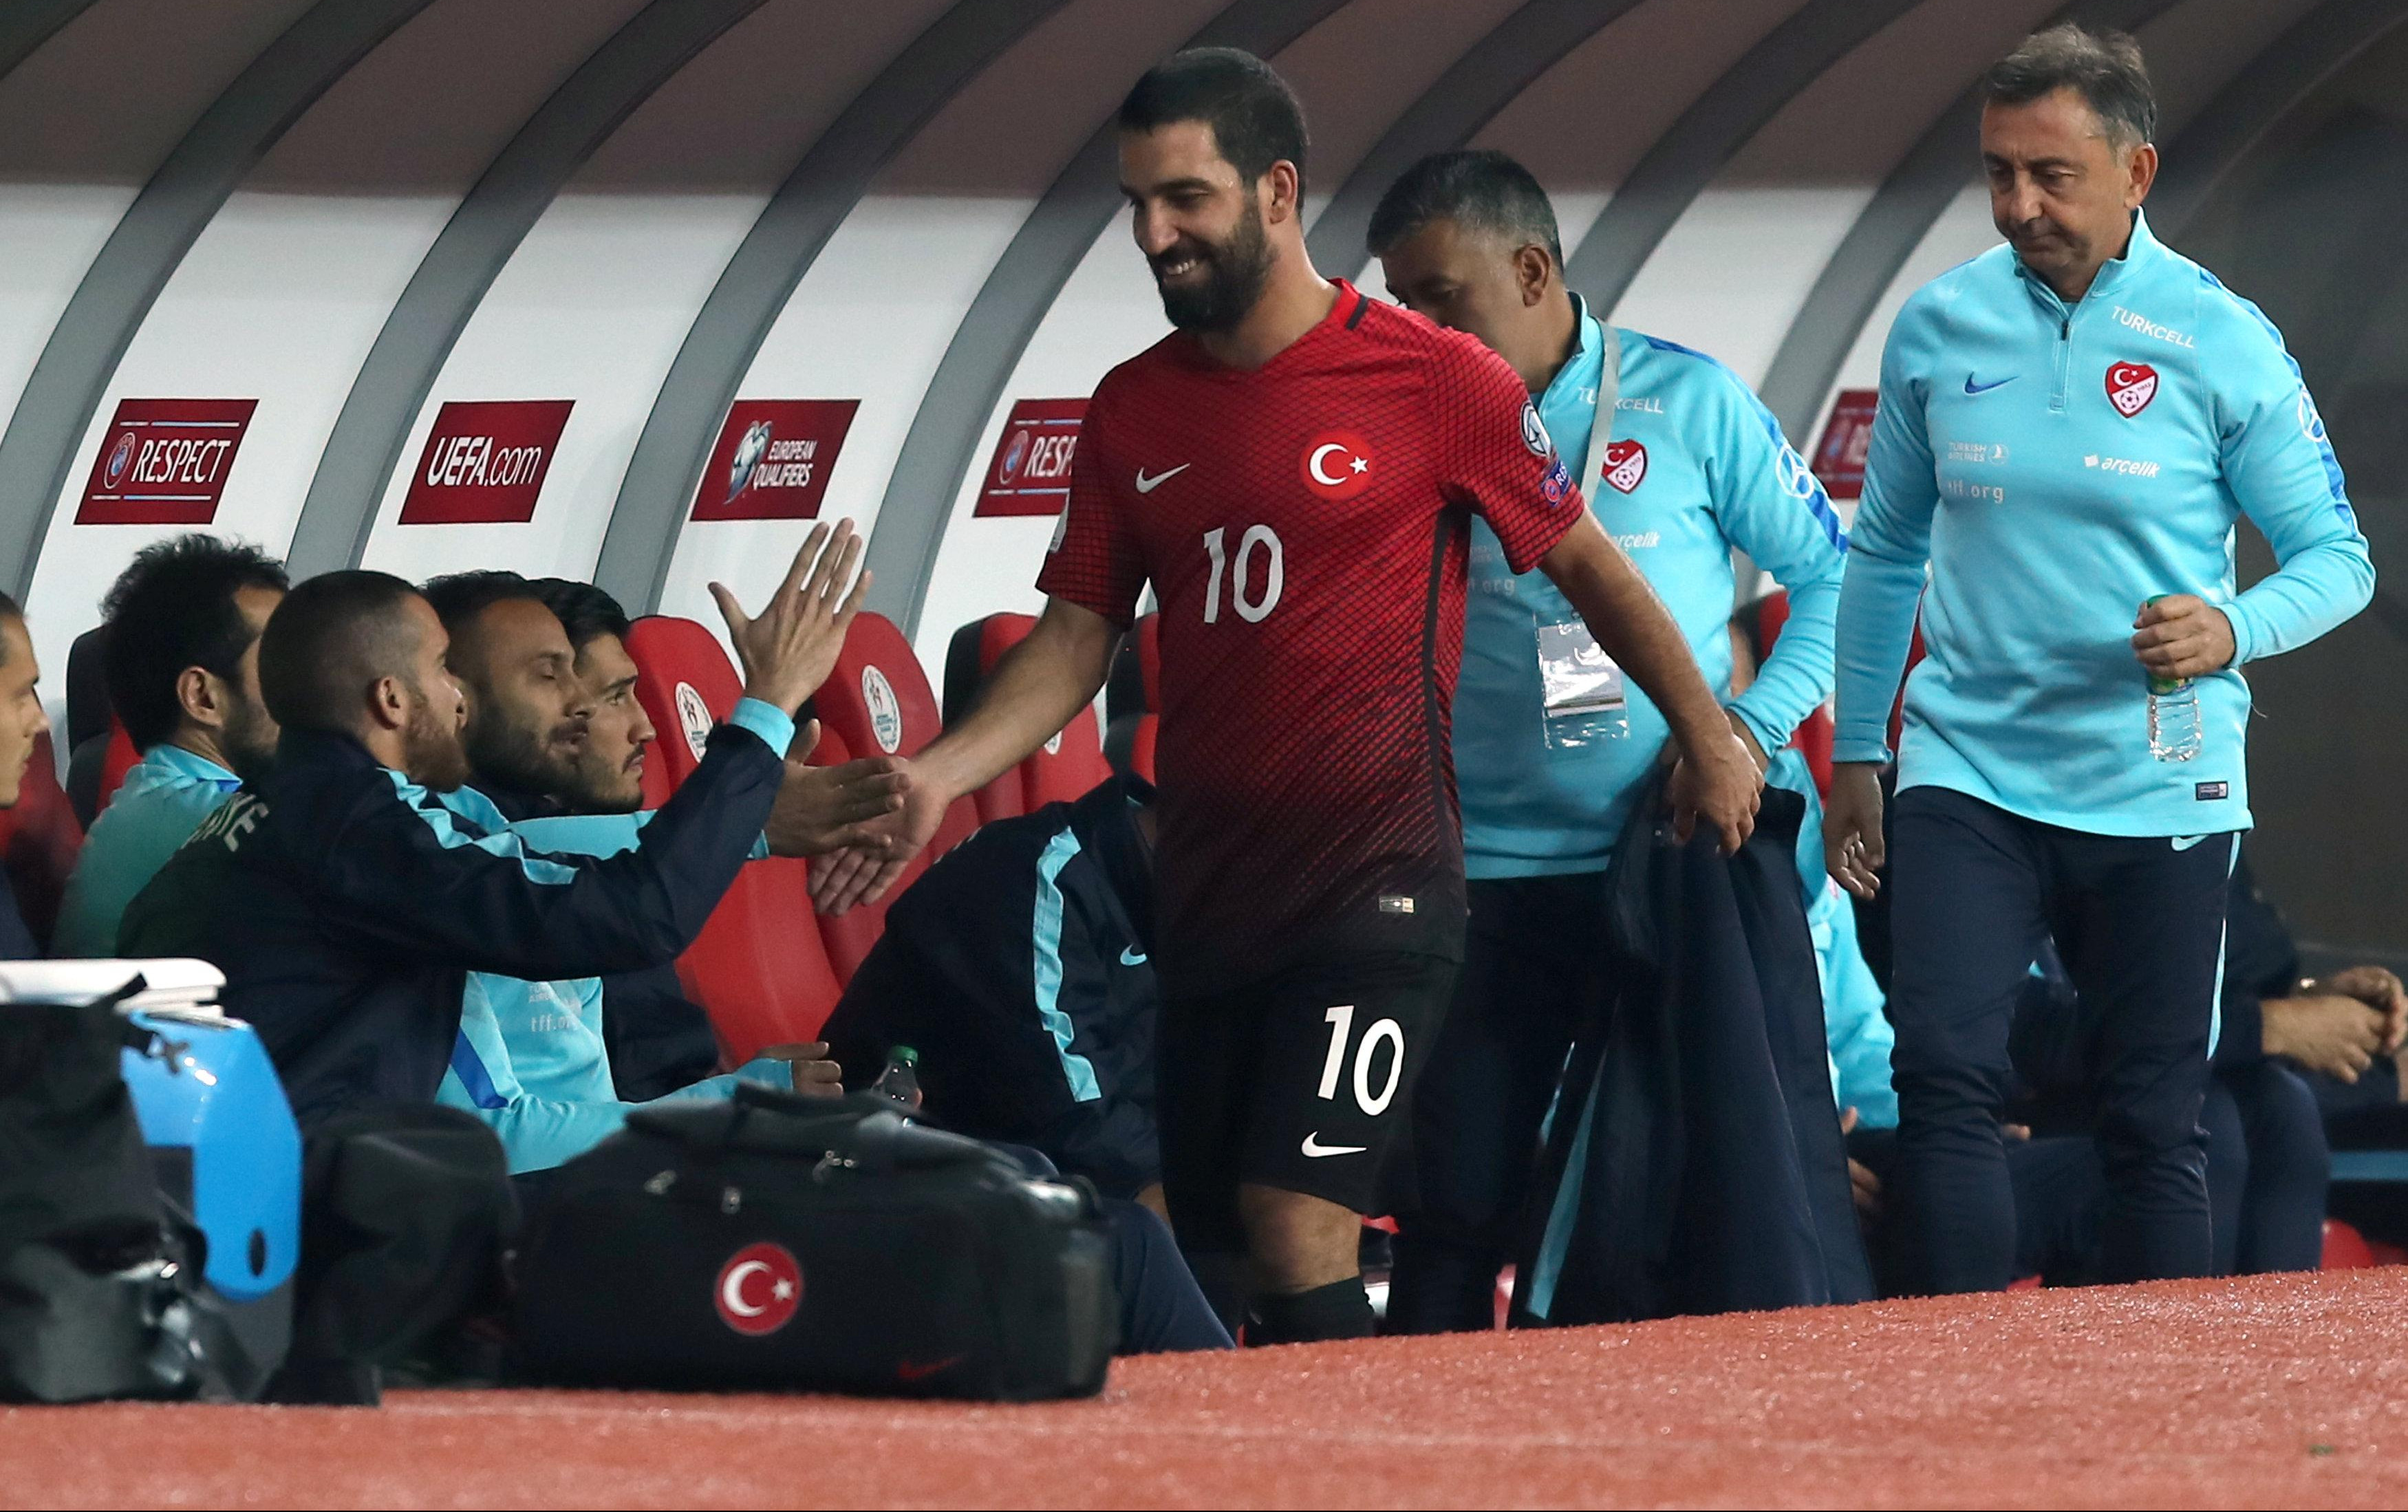 (FOTO) ŽENO, OPERI MI NOGE! Navijači zgroženi potezom turskog fudbalera!